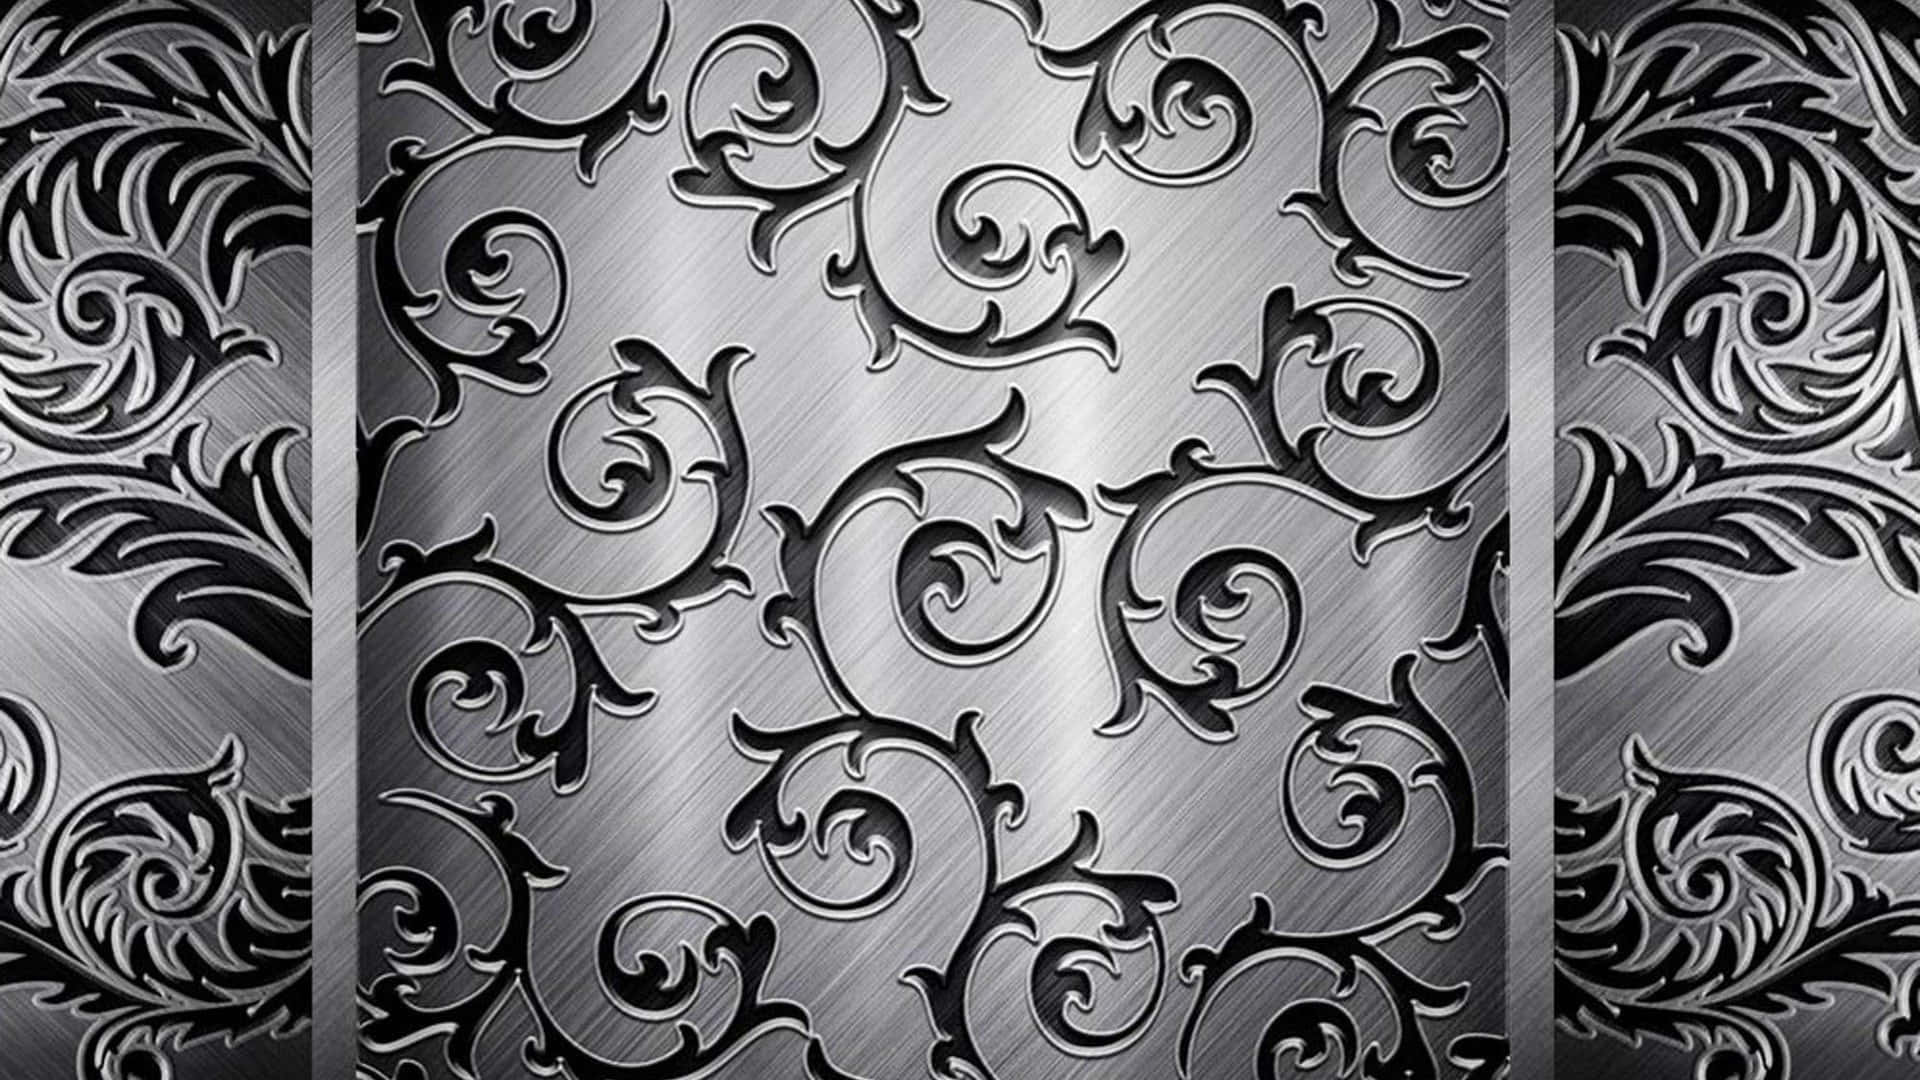 Sjov sort og hvid sølv mønsterbillede